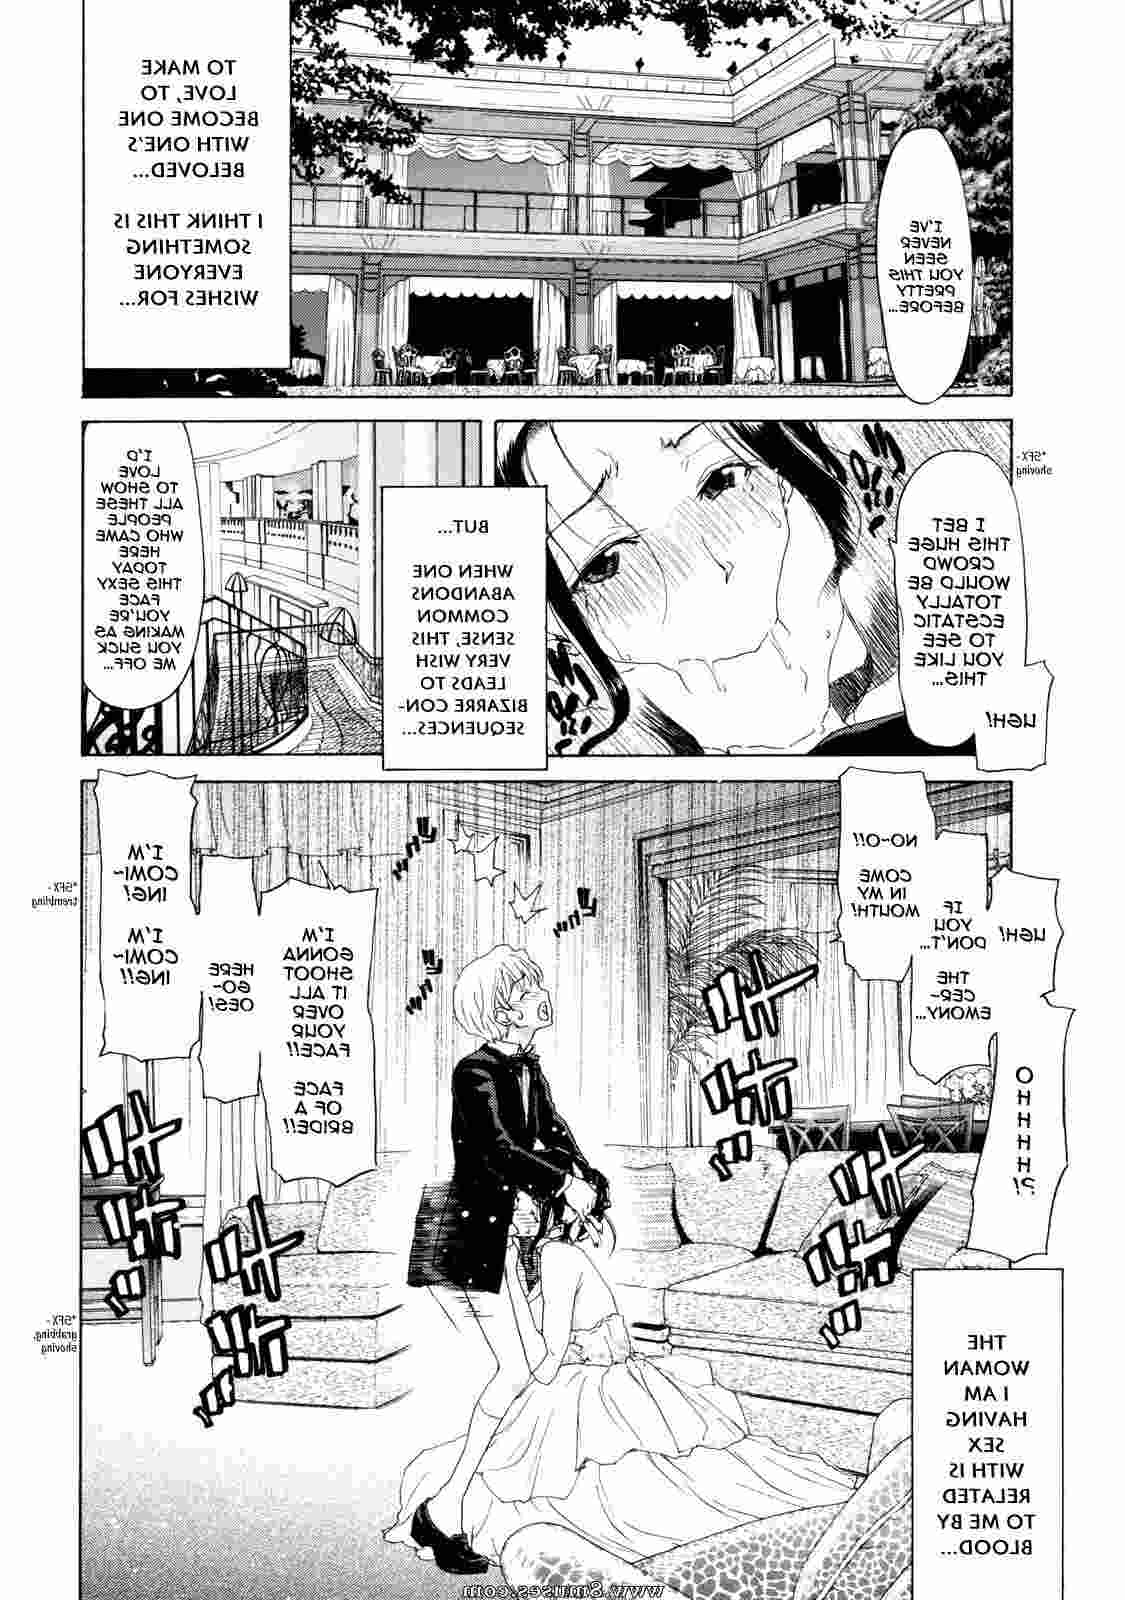 Hentai-and-Manga-English/Hori-Hiroaki Hori_Hiroaki__8muses_-_Sex_and_Porn_Comics_5.jpg